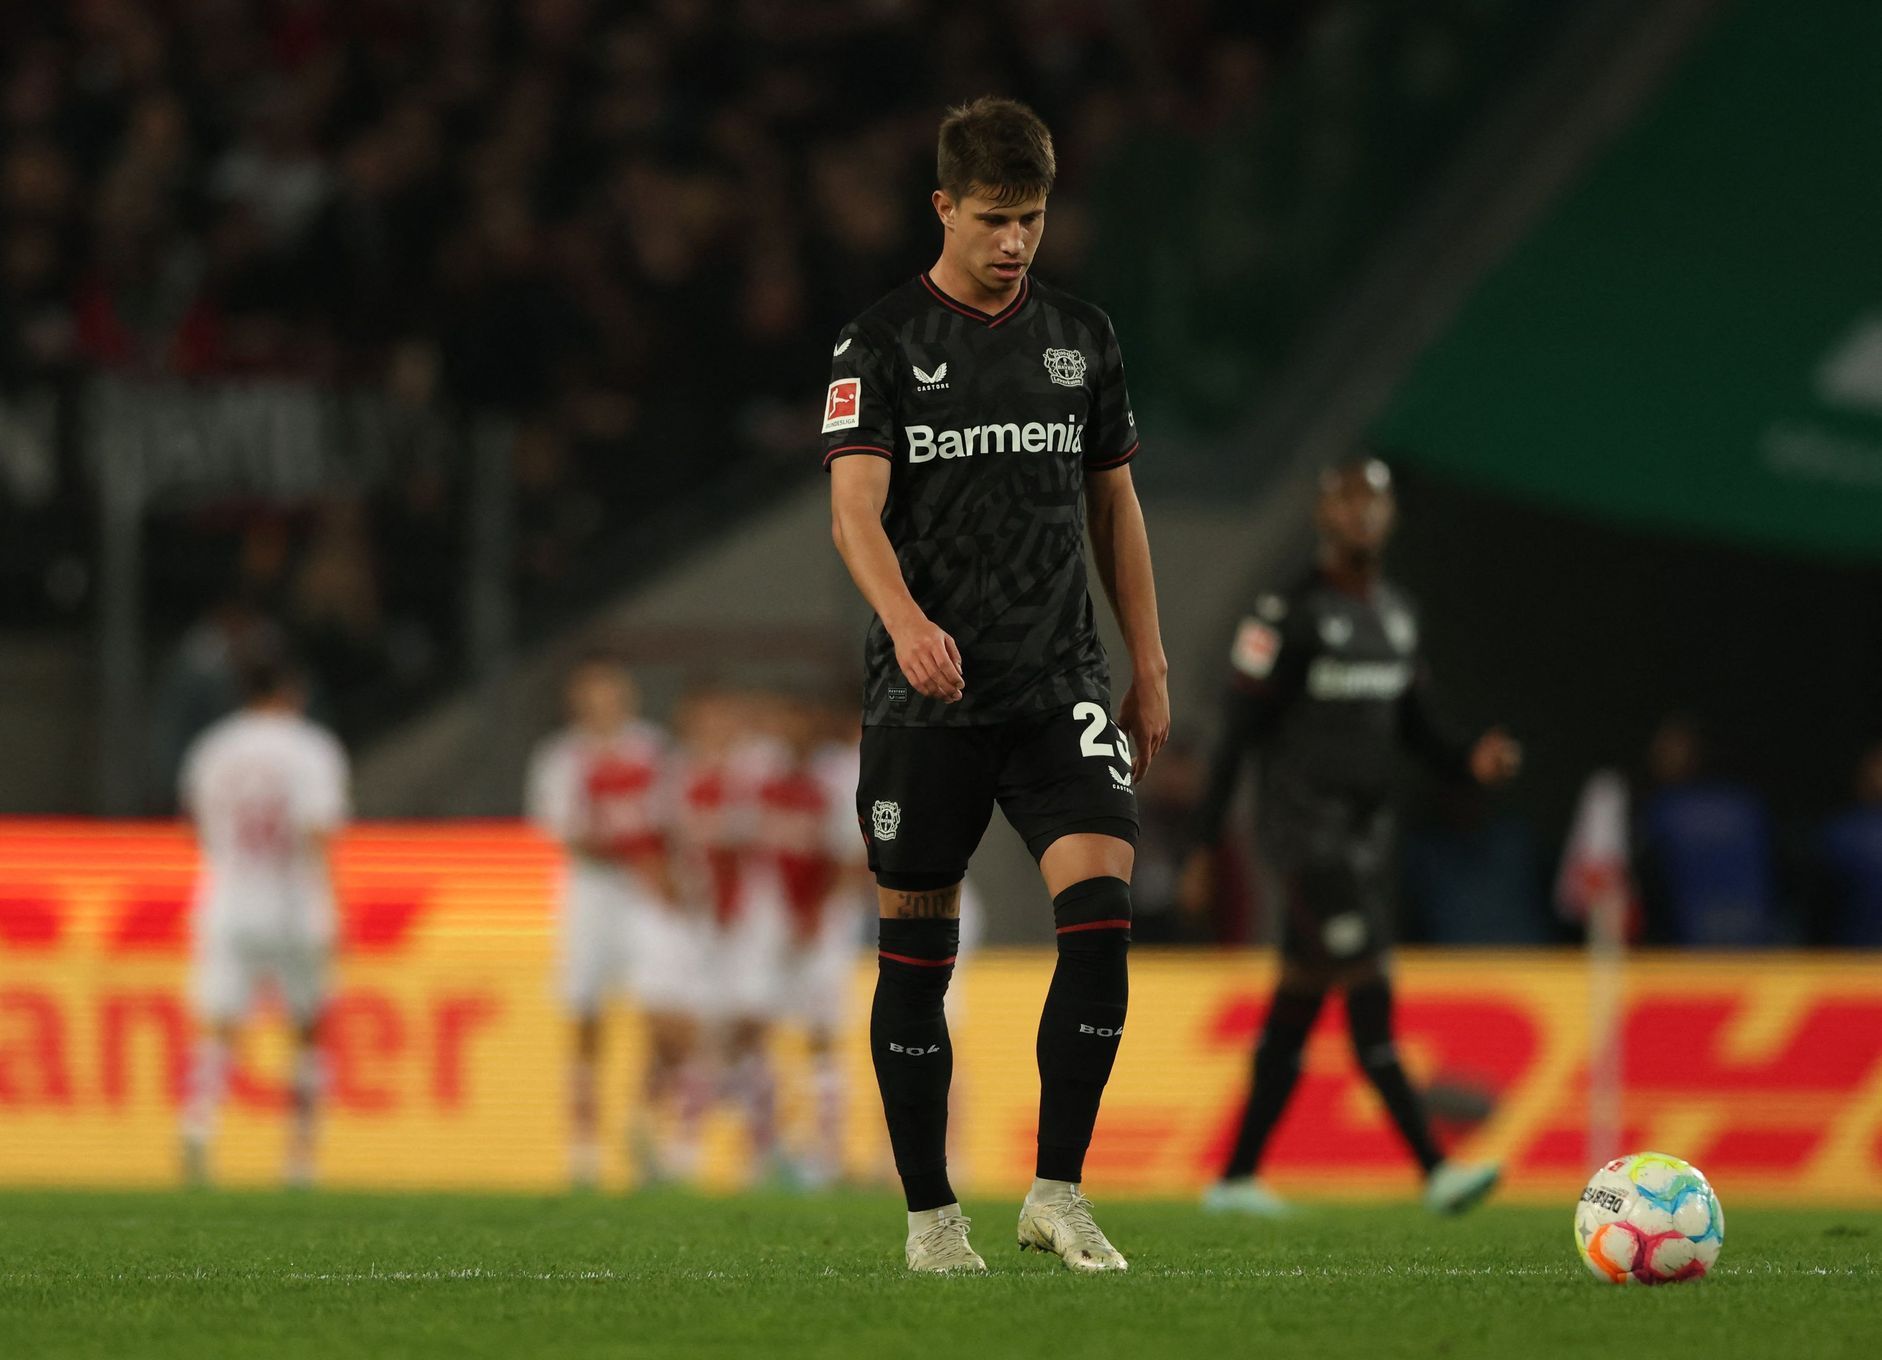 Bundesliga - FC Cologne v Bayer Leverkusen, Adam Hložek